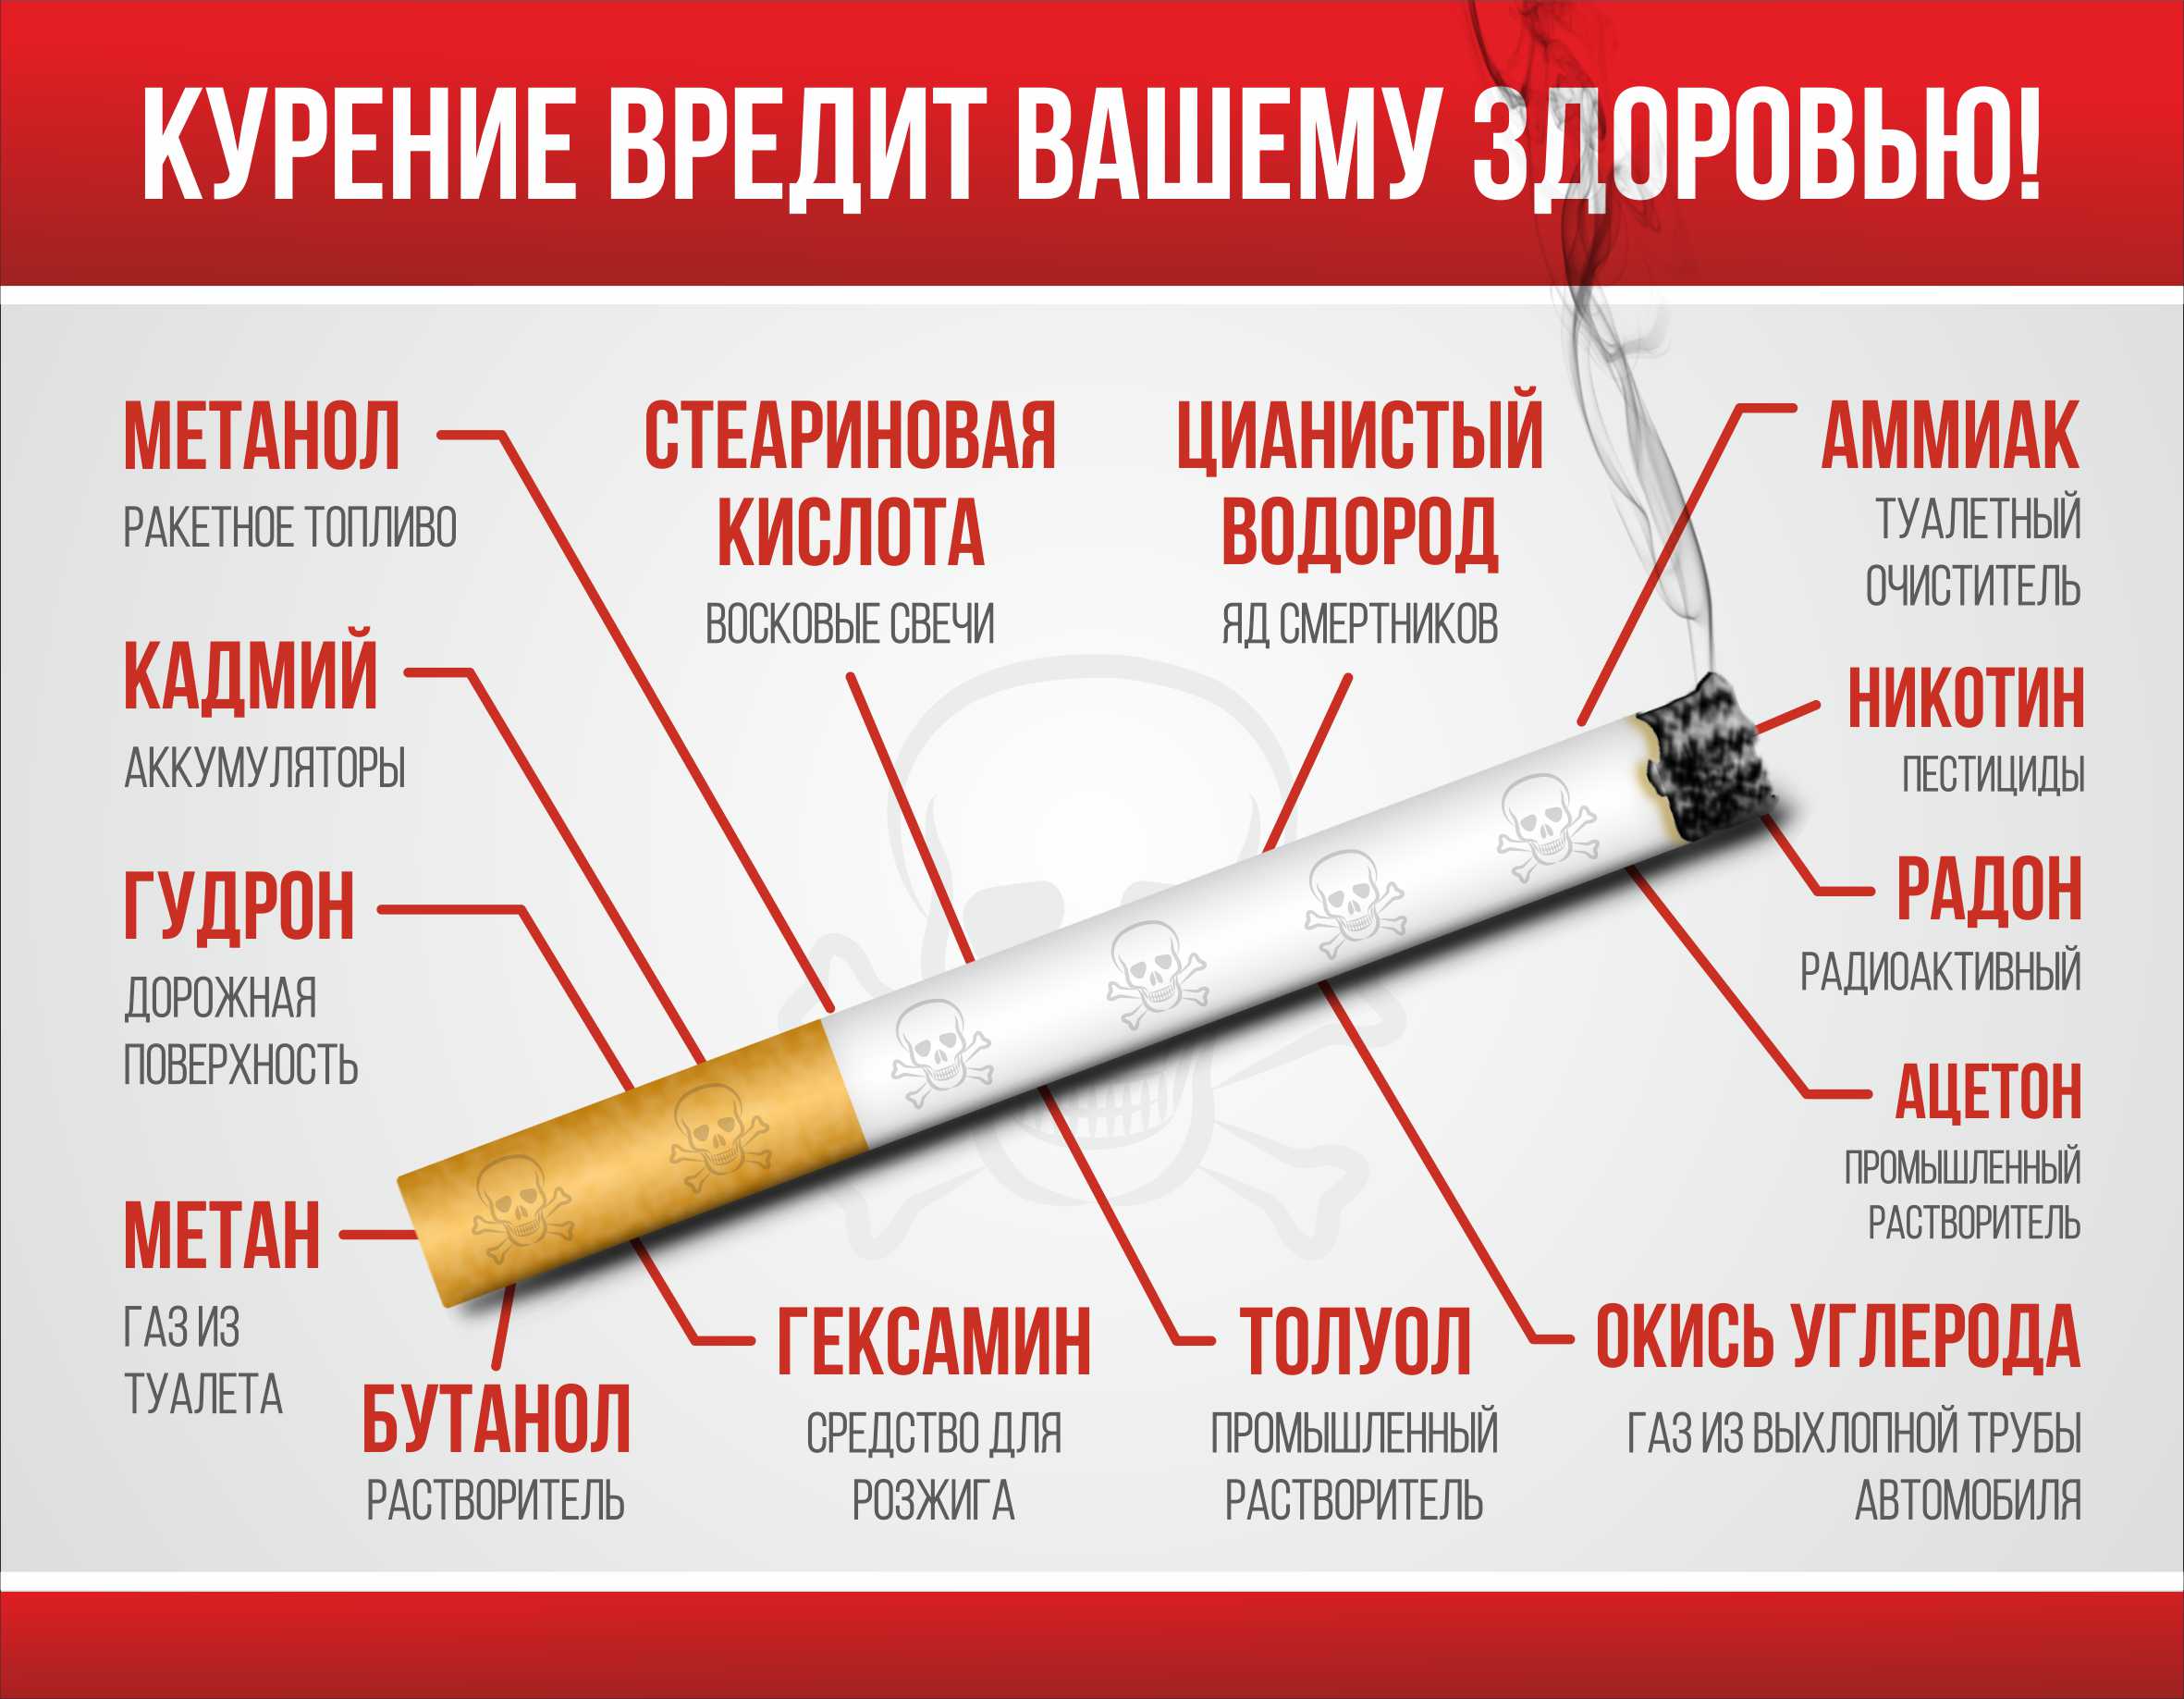 Курение вредит вашему здоровью.jpg